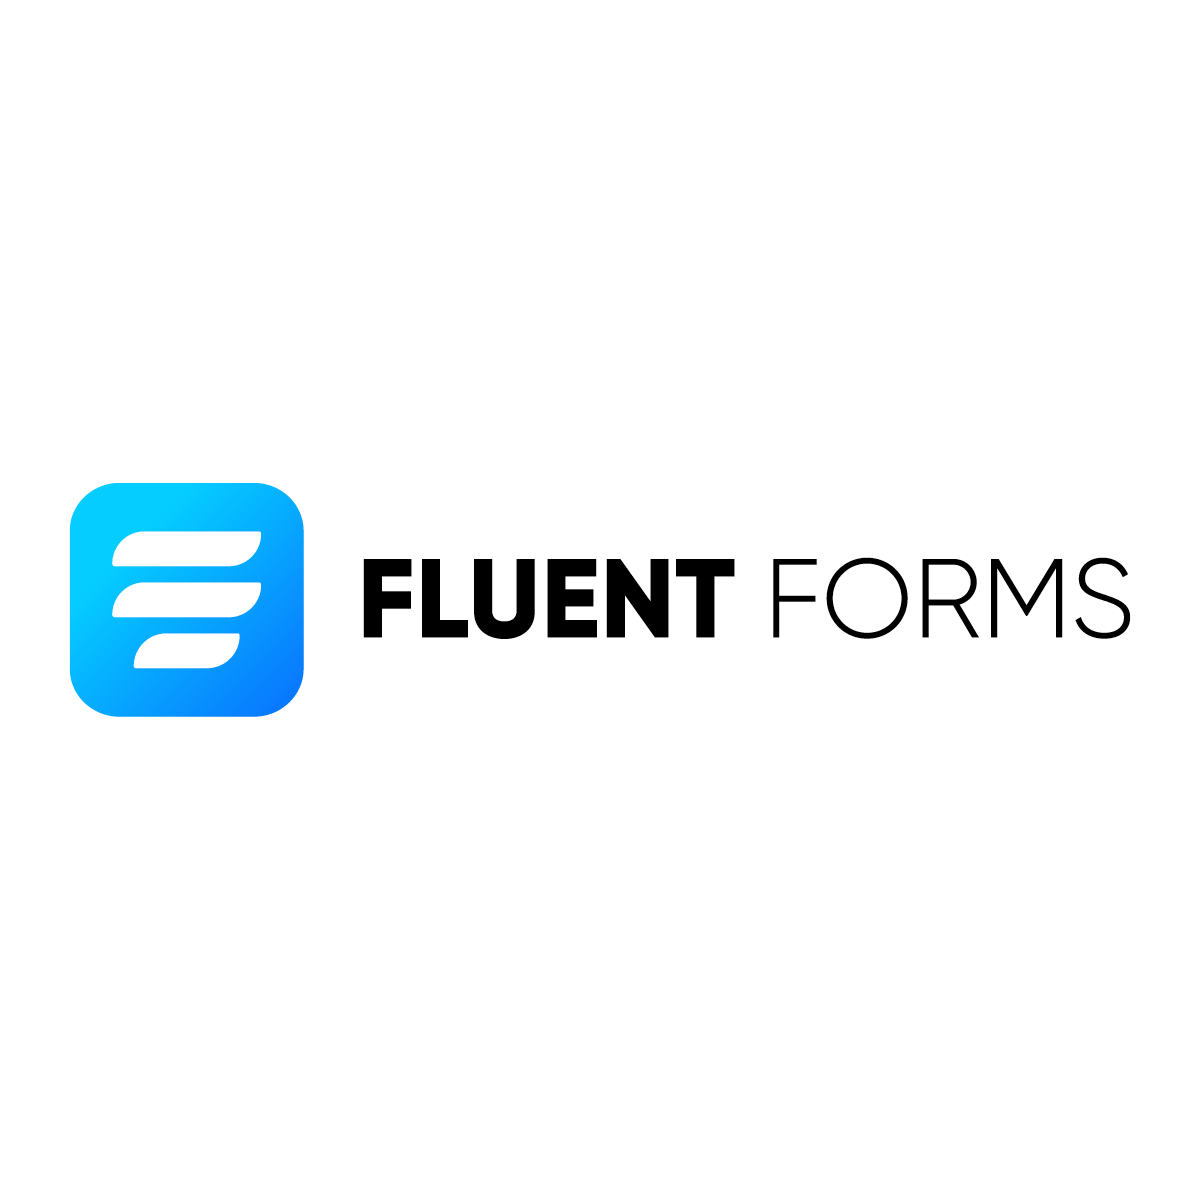 FluentForms